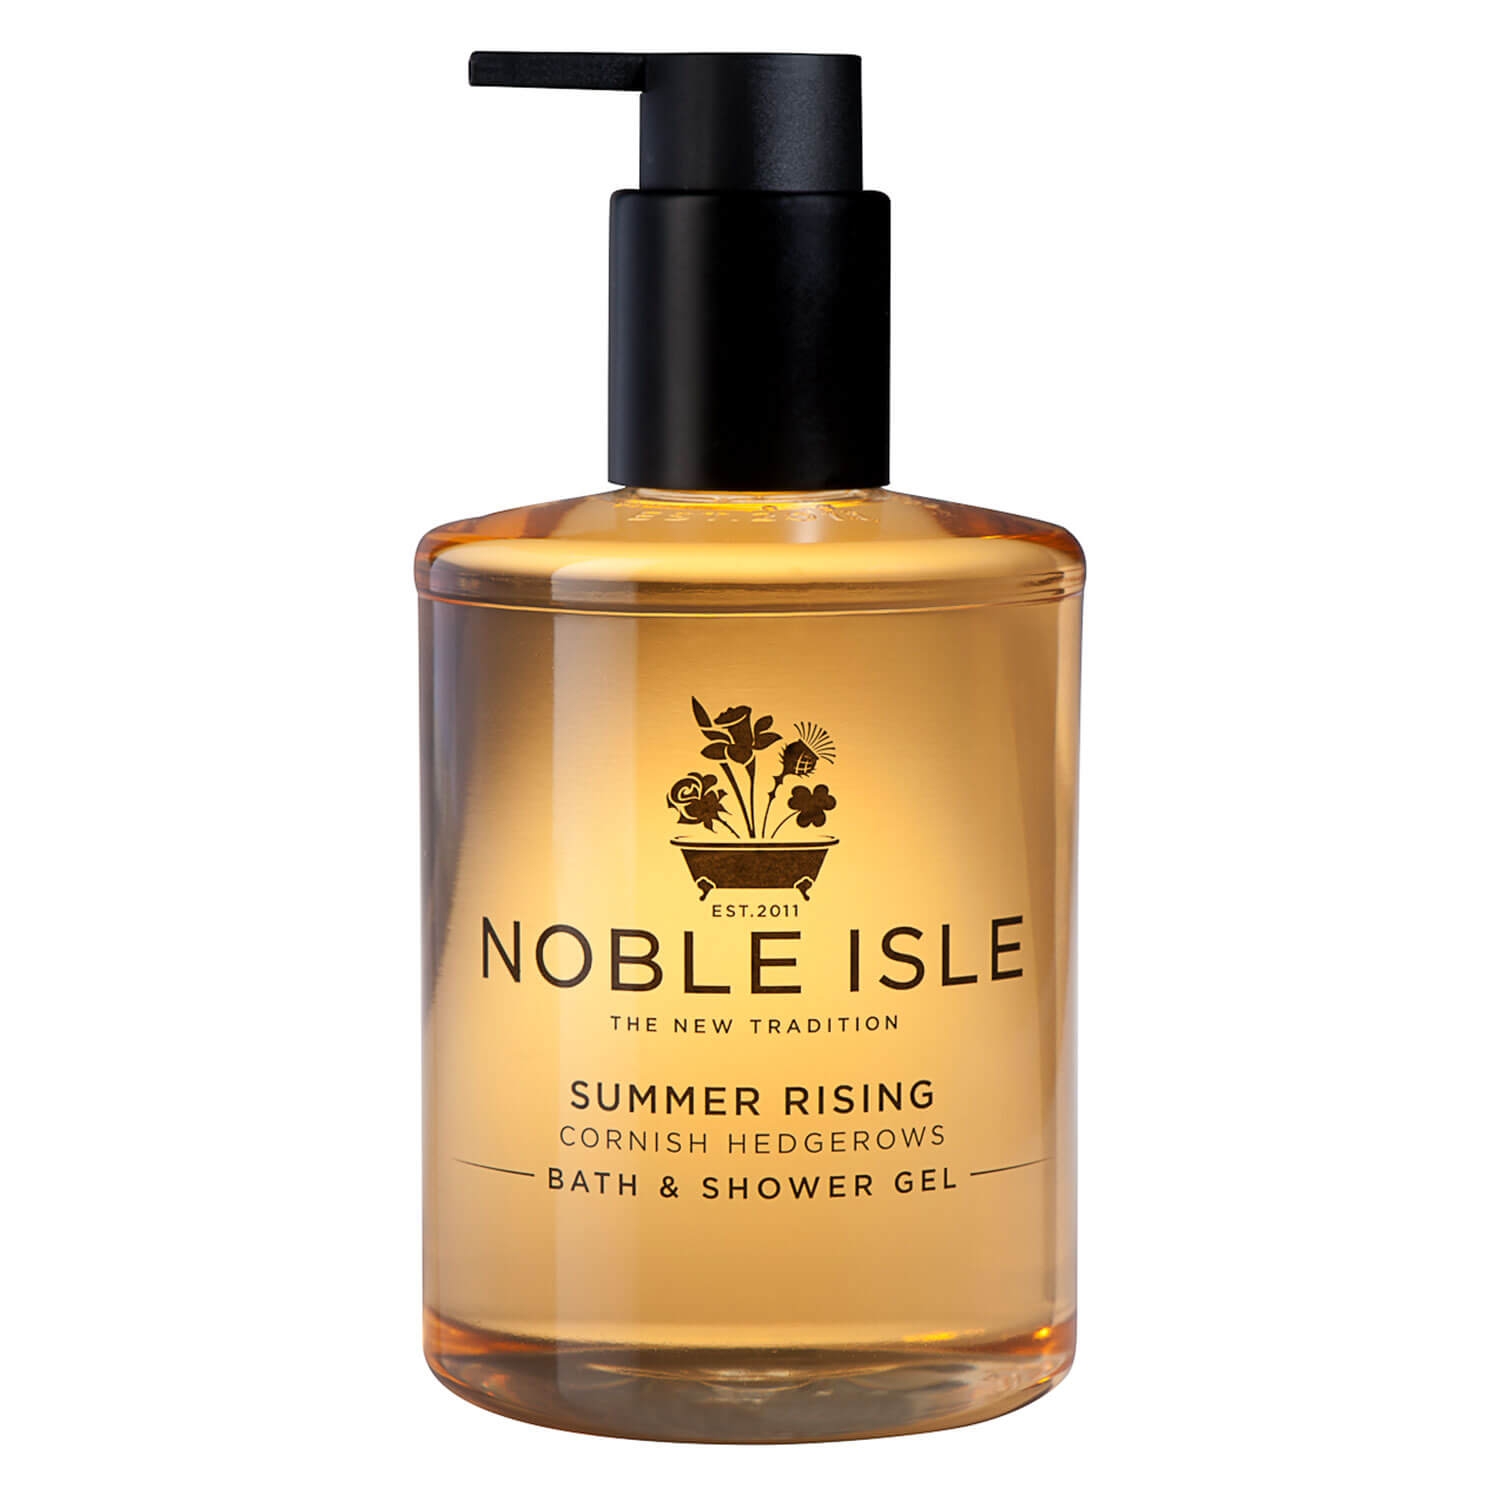 Produktbild von Noble Isle - Summer Rising Bath & Shower Gel